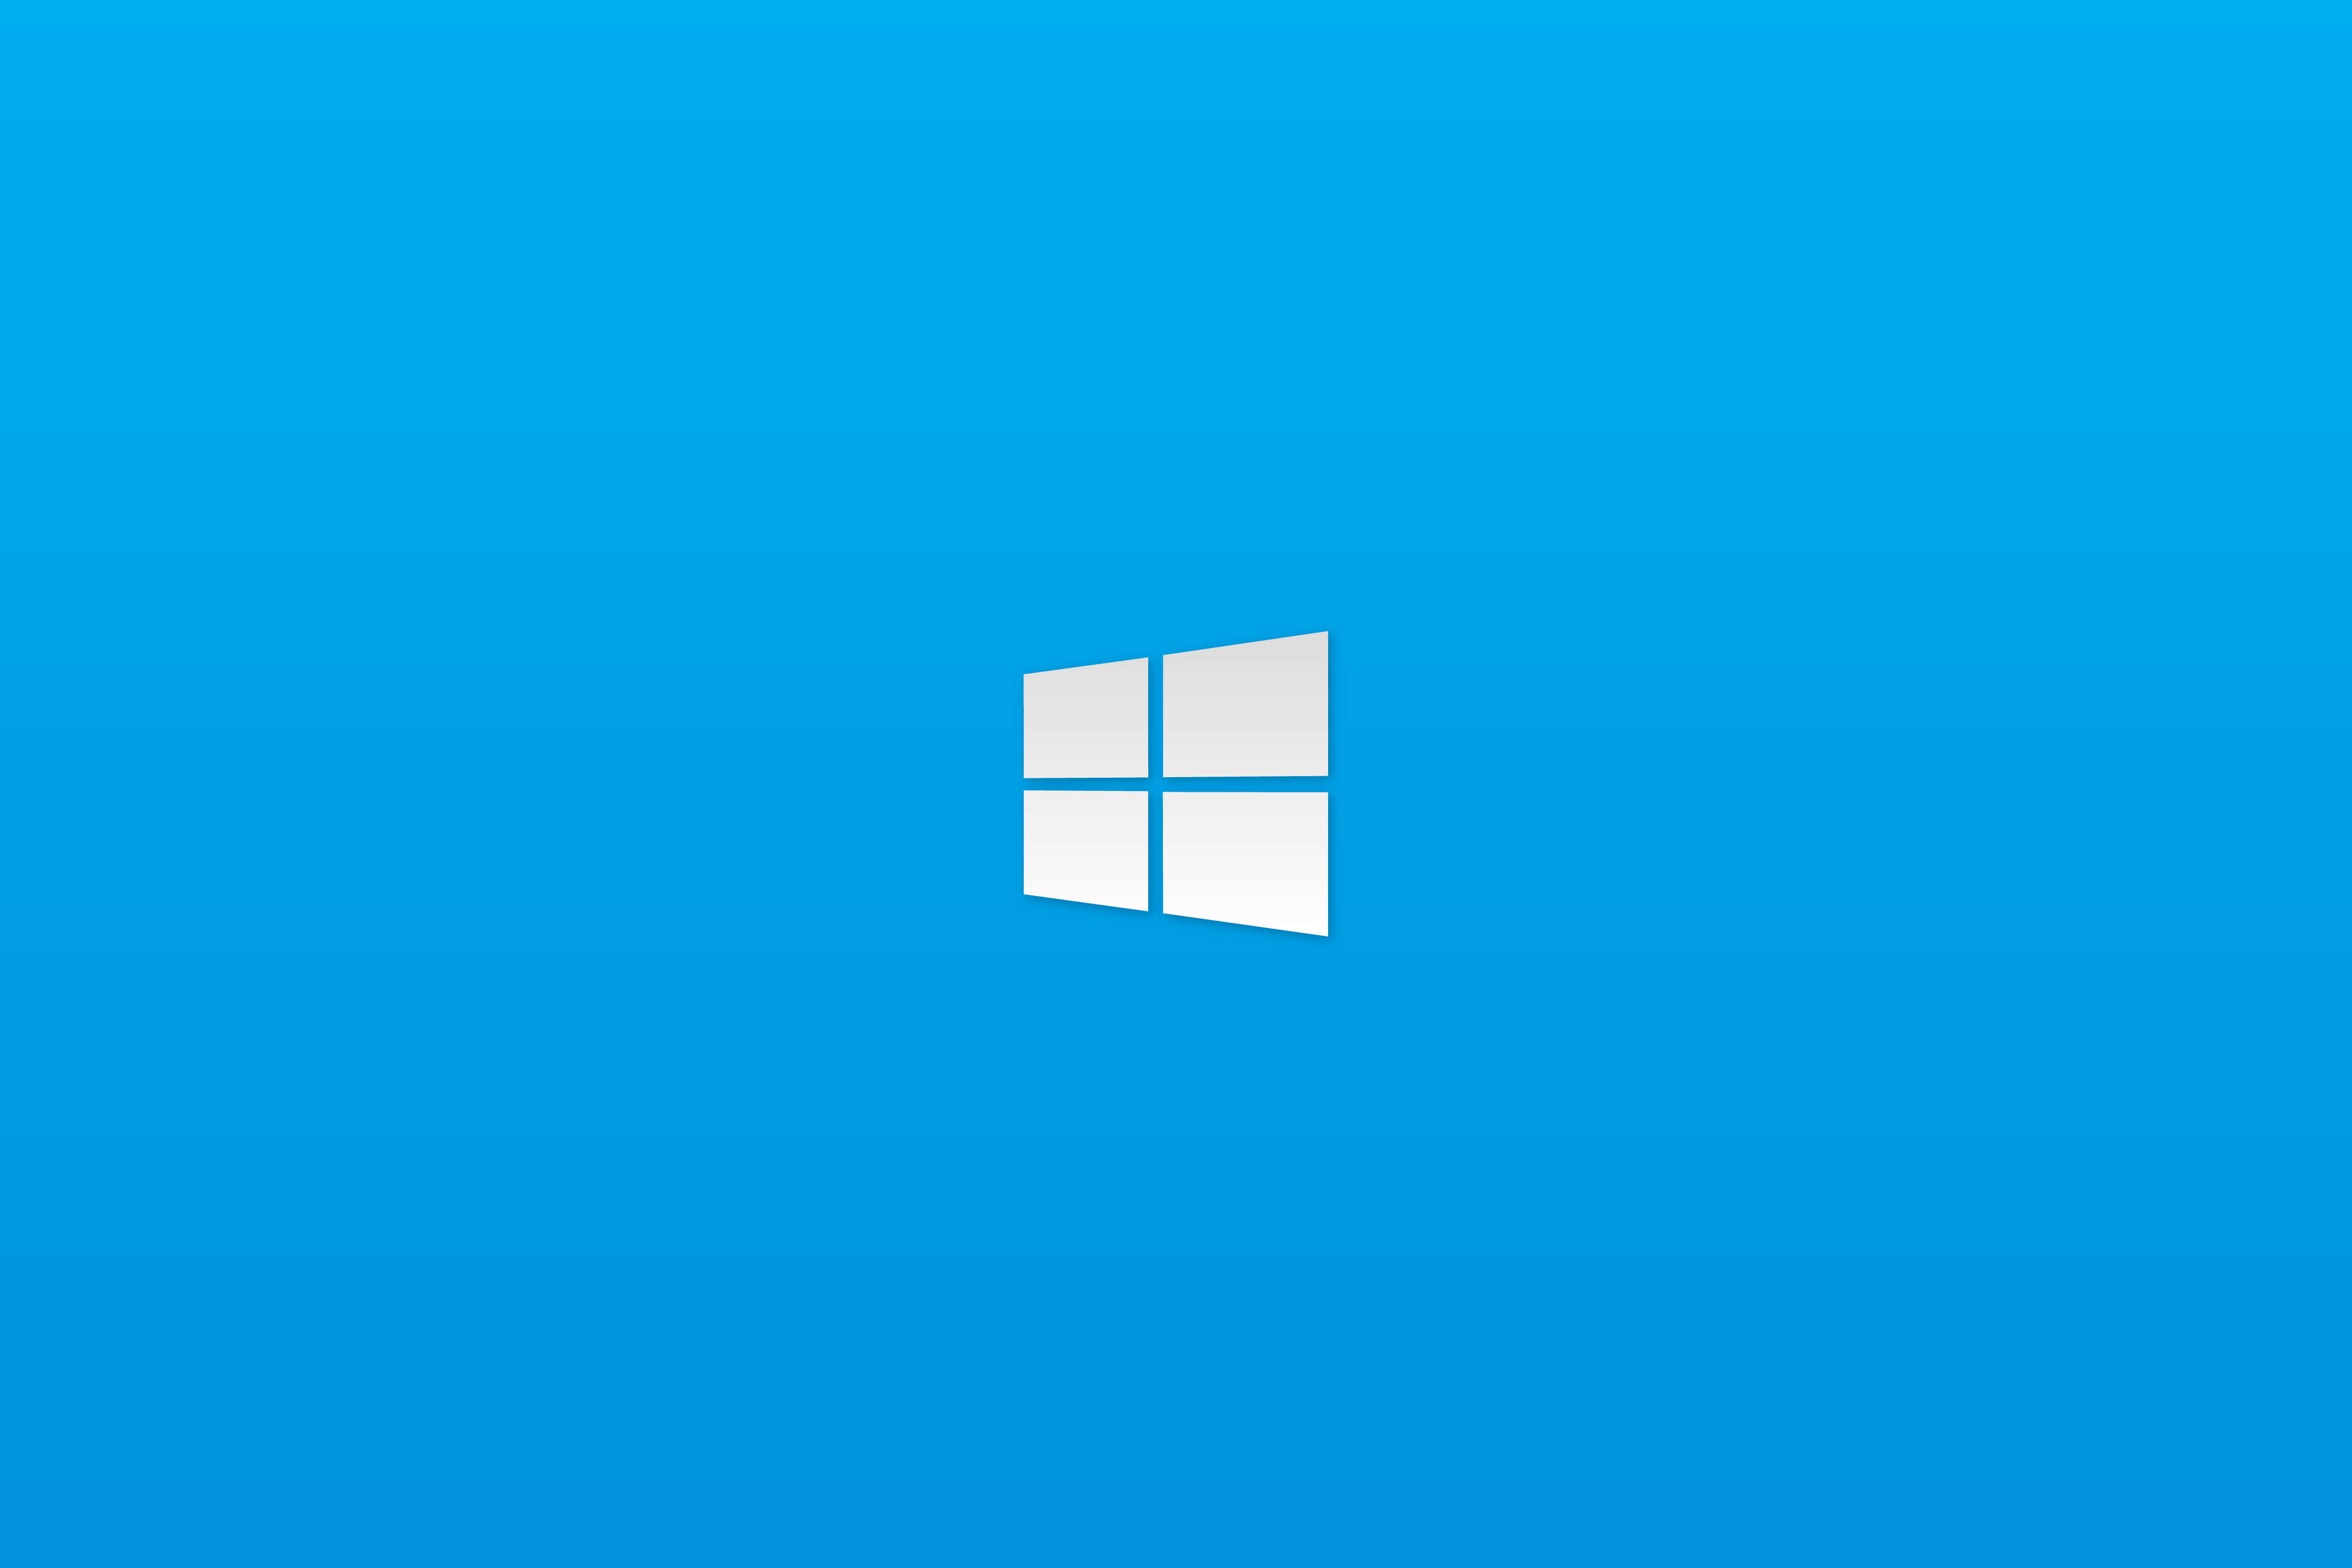 Simple Windows 10 By Hubz Wallpapers Wallpaperhub